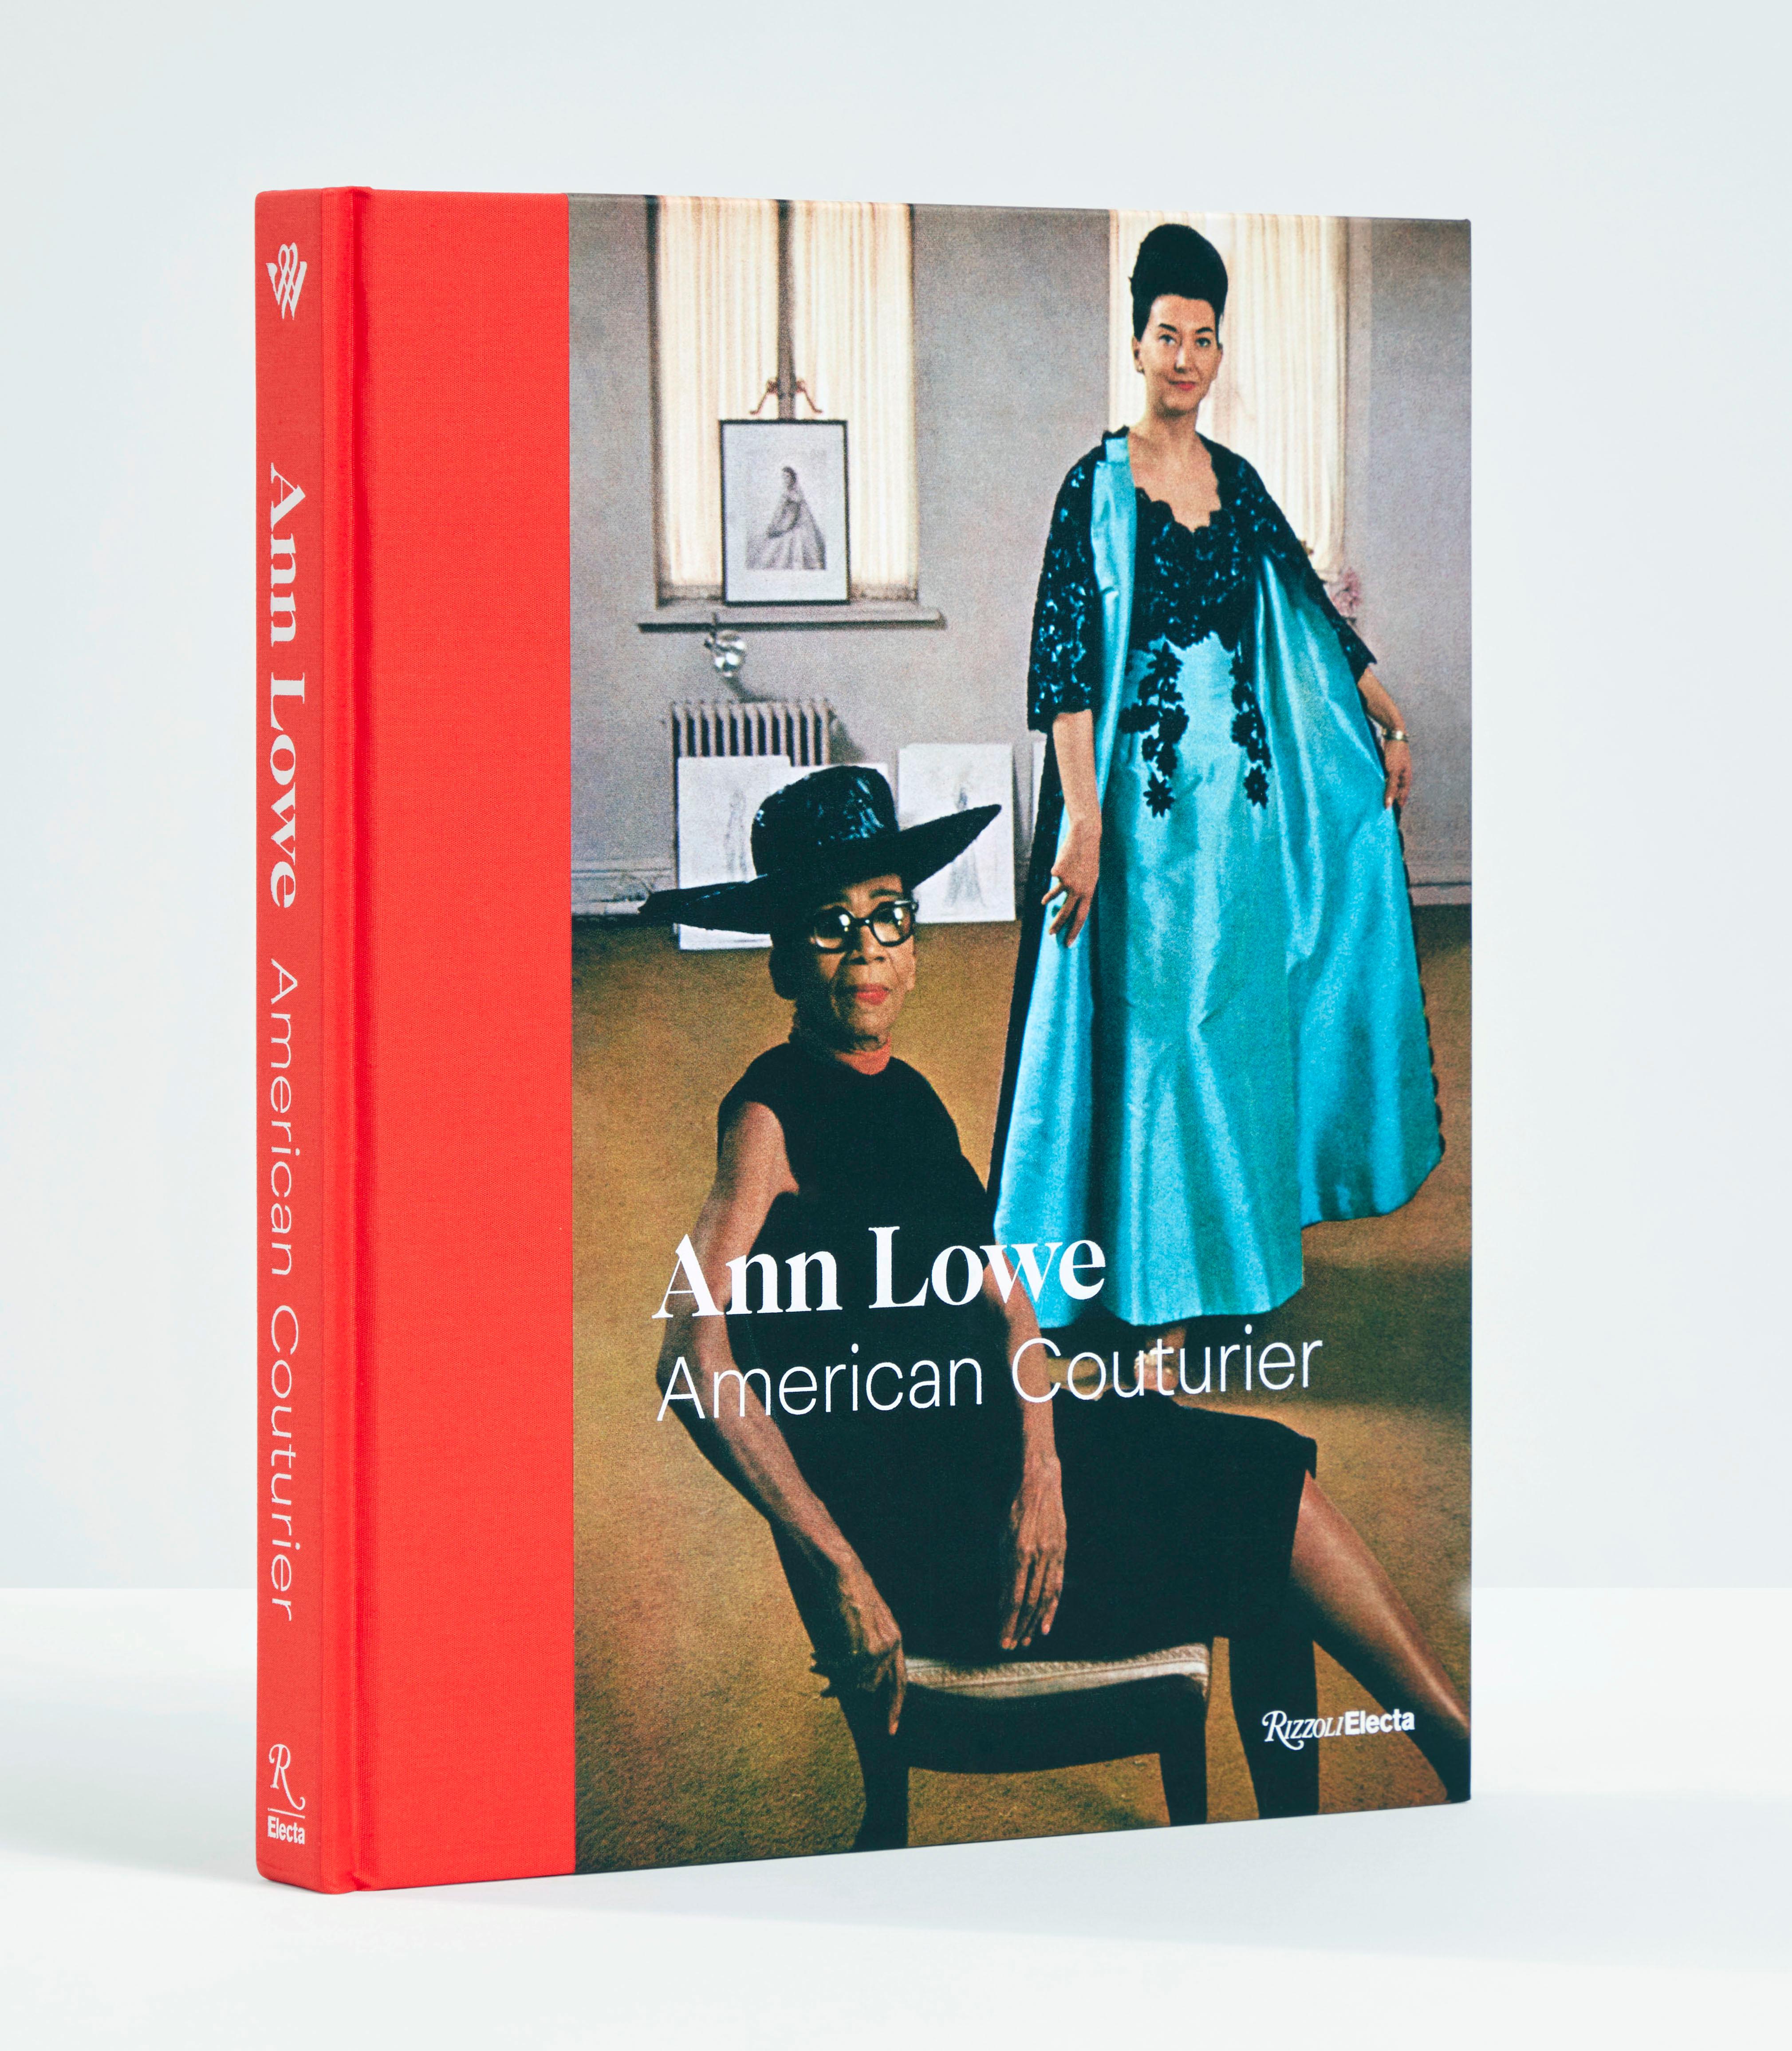 Le volume illustré définitif sur l'œuvre et la vie d'Ann Lowe, un couturier consommé qui a conçu de somptueuses robes de soirée et de mariée pour les membres du registre social américain, une femme noire qui travaillait dur dans les coulisses et